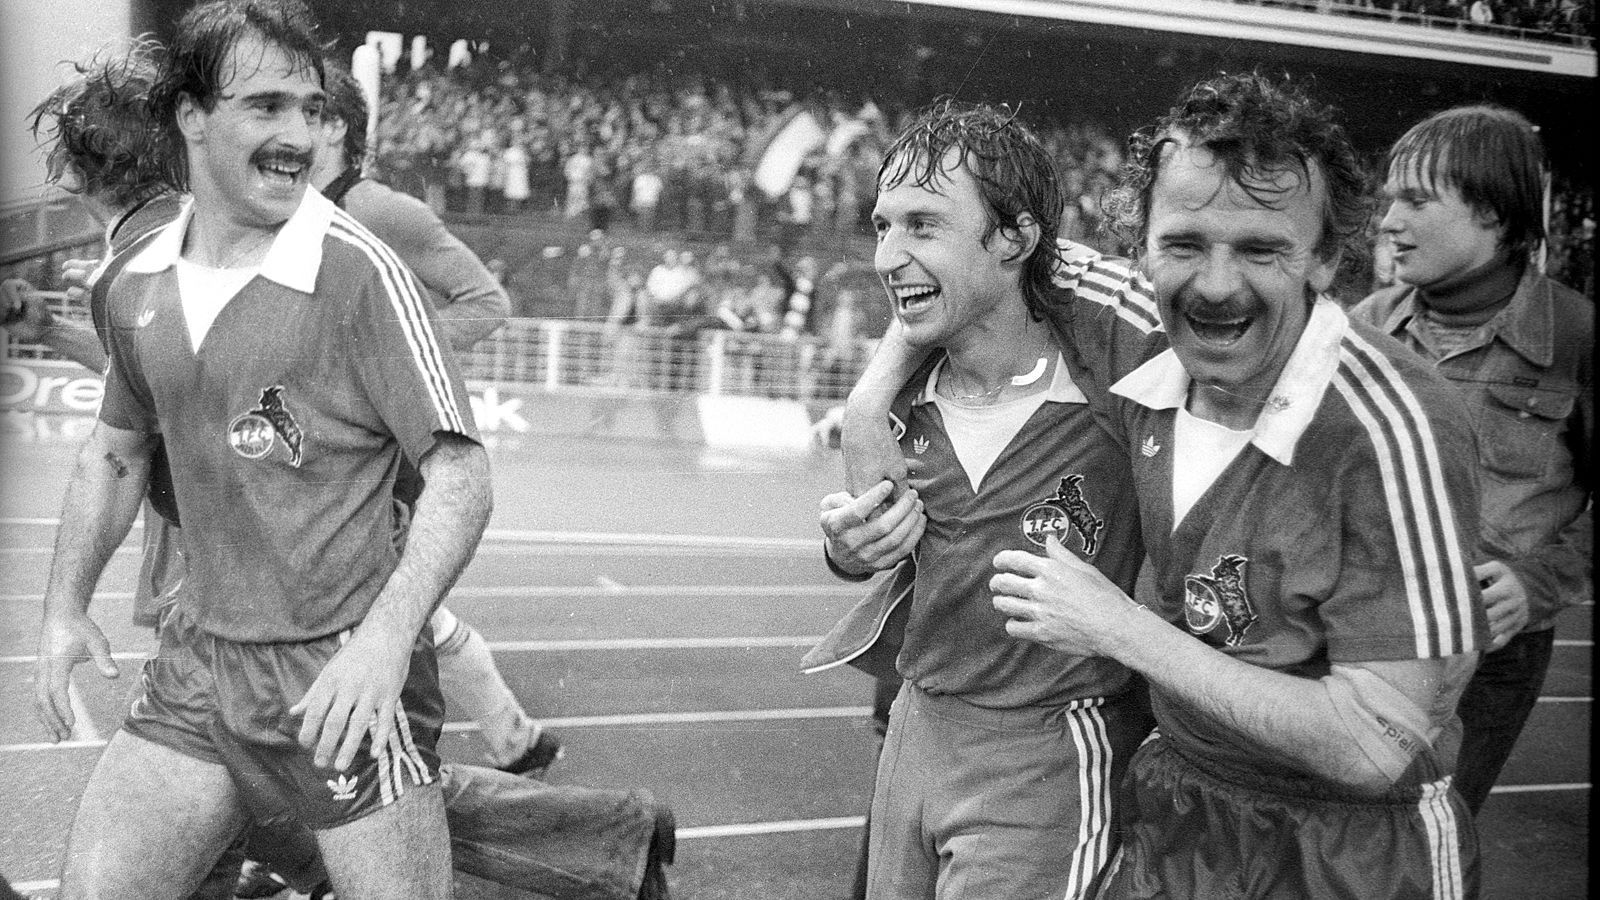 
                <strong>1. FC Köln (Saison 1977/78)</strong><br>
                Am letzten Spieltag der Saison 1977/78 gab es ein rheinisches Fernduell um den Meistertitel. Der 1. FC Köln ging mit zehn Toren Vorsprung vor Gladbach in sein Auswärtsspiel beim FC St. Pauli, das die "Geißböcke" auch klar mit 5:0 gewannen - und am Ende Meister wurden. Aber: Es wurde noch einmal richtig knapp, und am Ende entschieden lediglich drei Tore über Platz 1 oder Platz 2. Da das Bökelbergstadion zu dieser Zeit umgebaut wurde, fand die Partie der Gladbacher im Düsseldorfer Rheinstadion statt. Dort spielte sich an diesem 29. April 1978 total Verrücktes ab. Borussia Mönchengladbach schoss gegen Borussia Dortmund Tor um Tor, gewann am Ende mit 12:0(!). So bleibt den Gladbachern trotz der verlorenen Meisterschaft zumindest bis heute ein kleiner Trost. Der damalige 12:0-Erfolg ist der bis heute höchste Sieg einer Mannschaft in einem Bundesligaspiel.
              